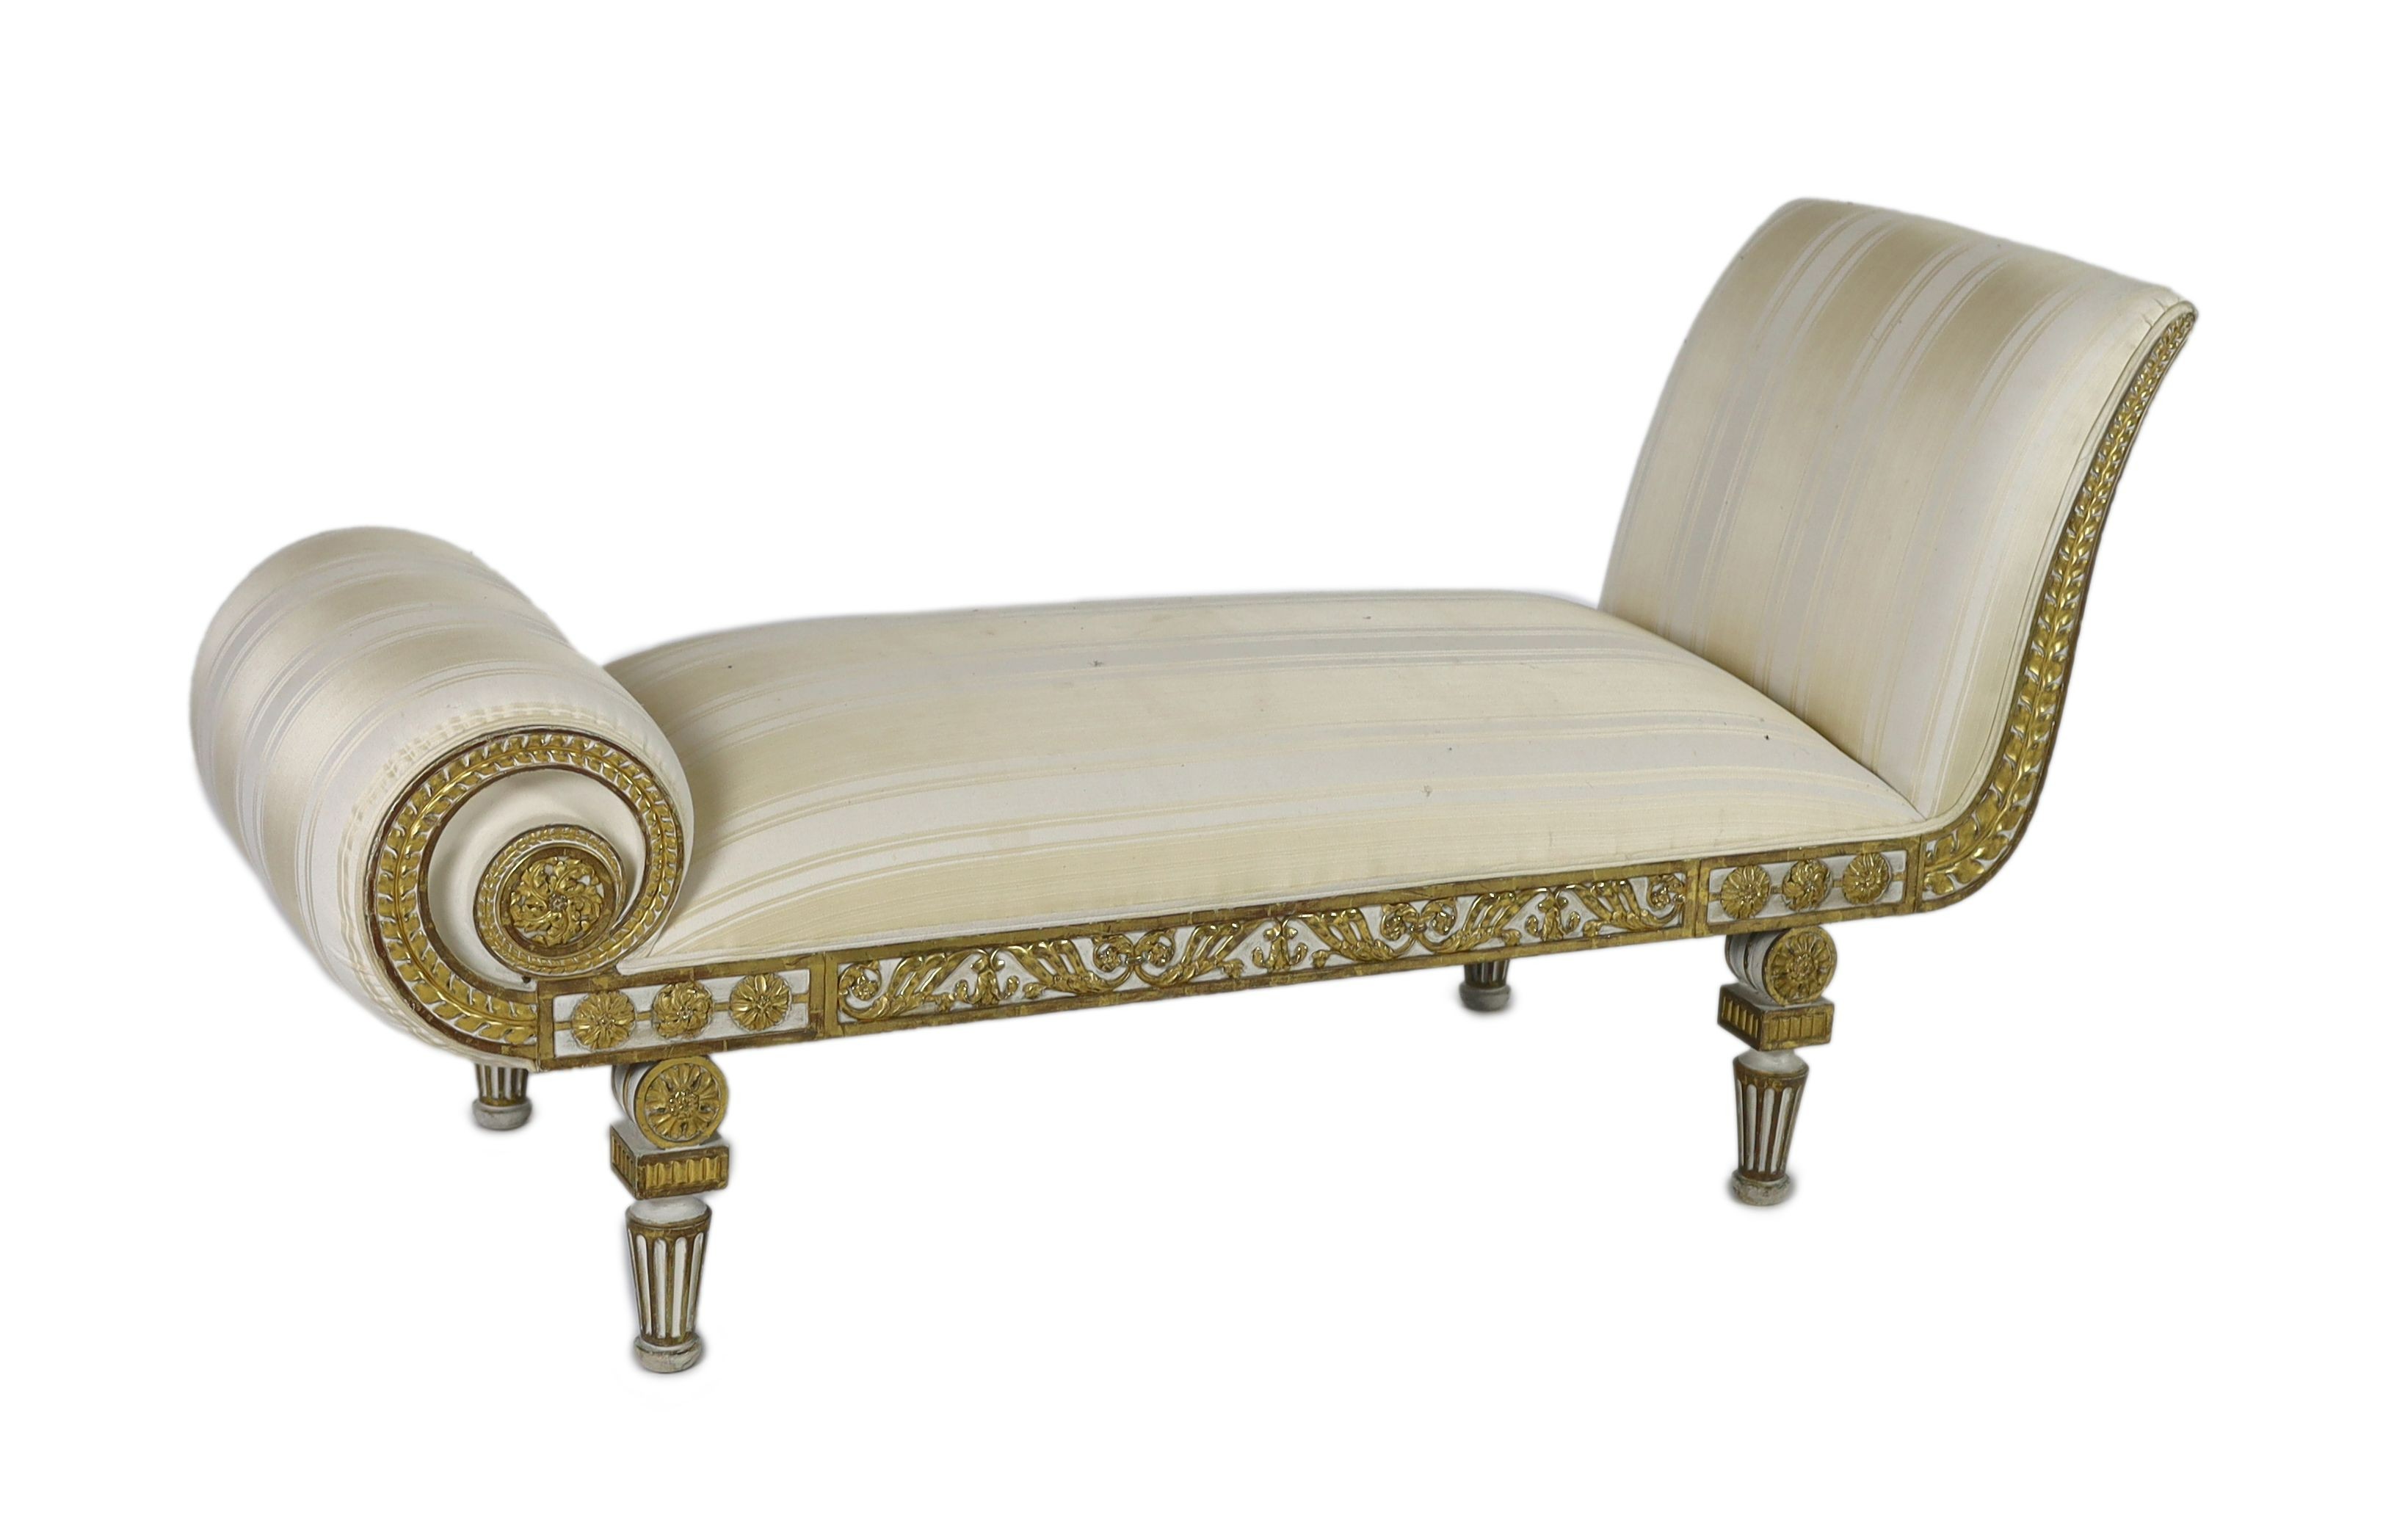 A Regency white painted and parcel gilt chaise longue, L.166cm W.63cm H.84cm